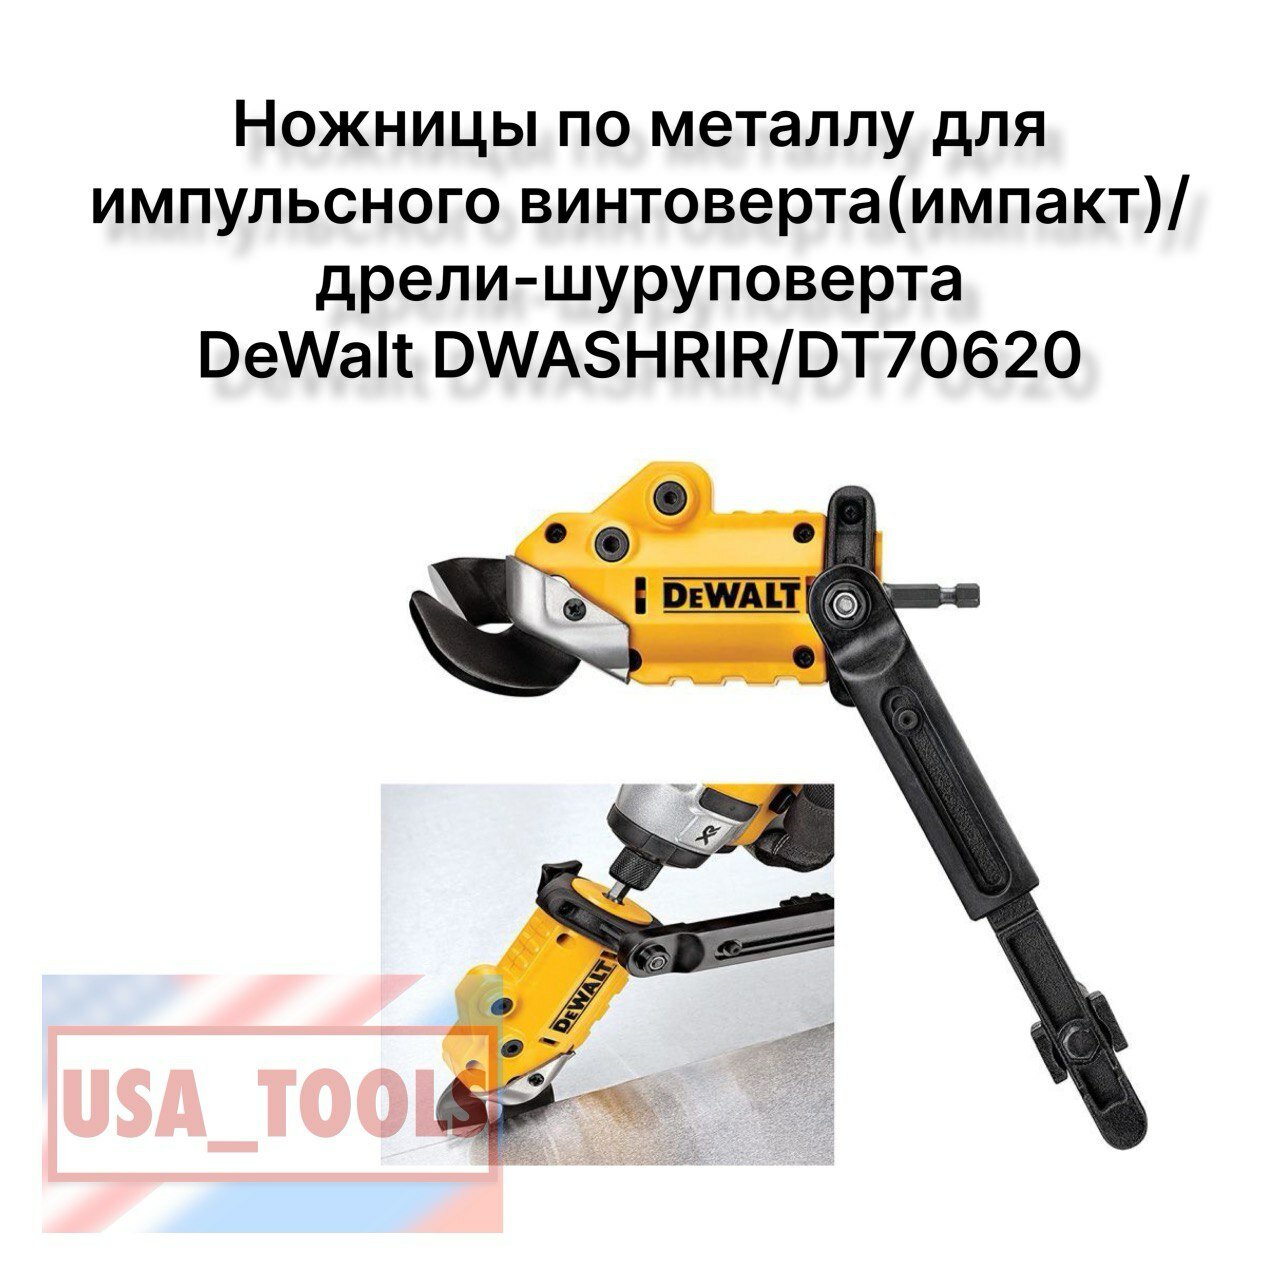 Ножницы по металлу для импульсного винтоверта(импакт)/дрели-шуруповерта DeWalt DWASHRIR/DT70620